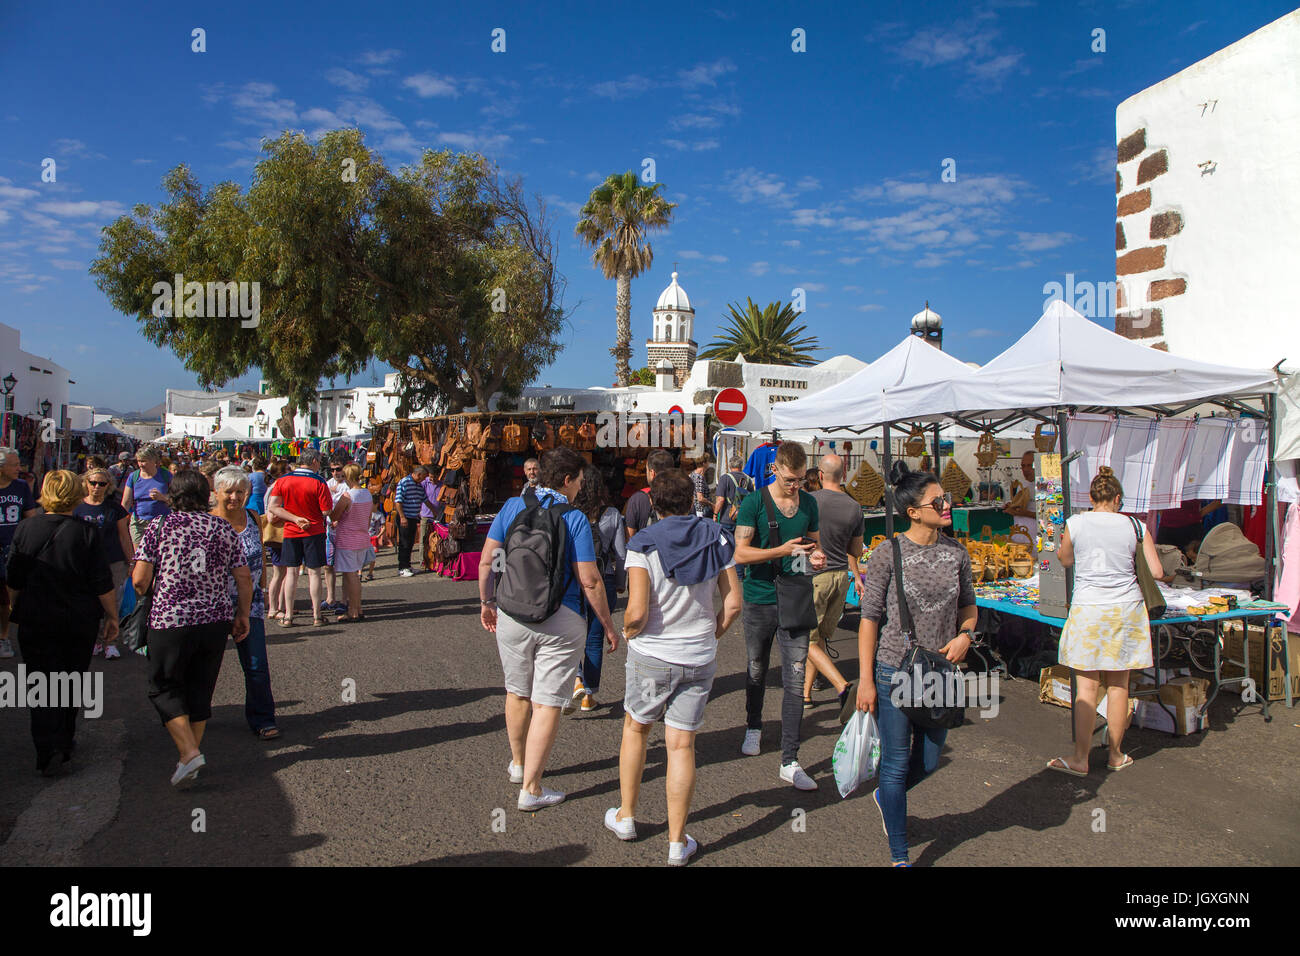 Woechentlicher Sonntagsmarkt in Teguise, Lanzarote, Kanarische Inseln, Europa | Weekly sunday market at Teguise, Lanzarote, Canary islands, Europe Stock Photo